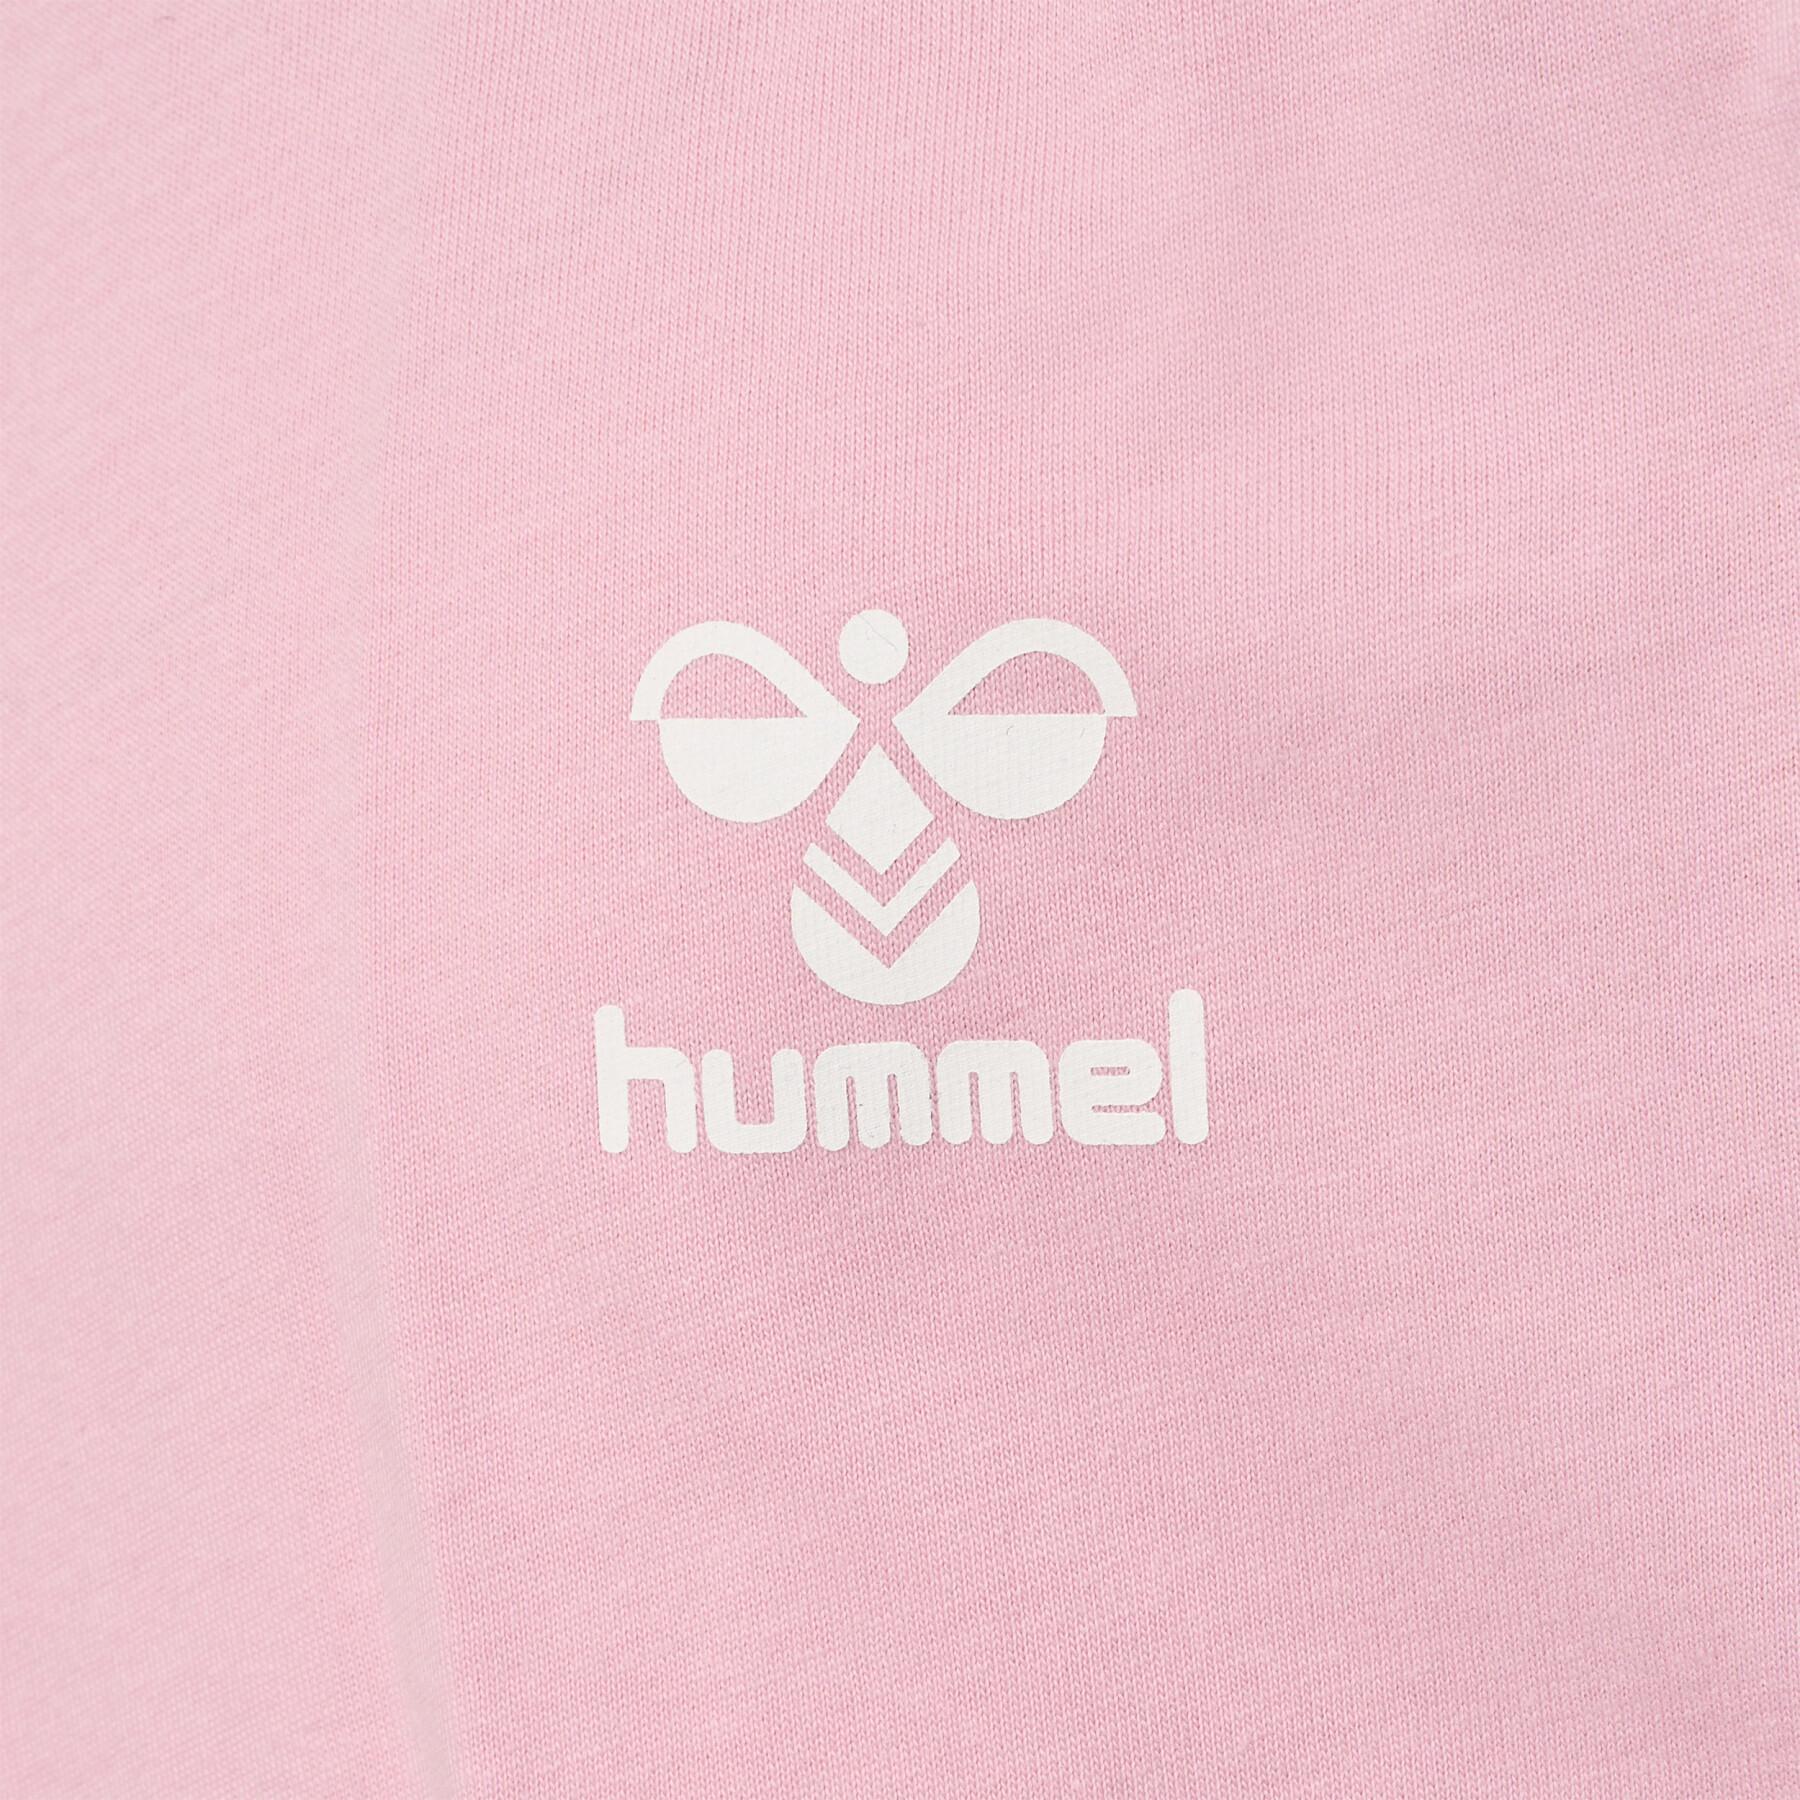 Vestido de t-shirt de rapariga Hummel Mille